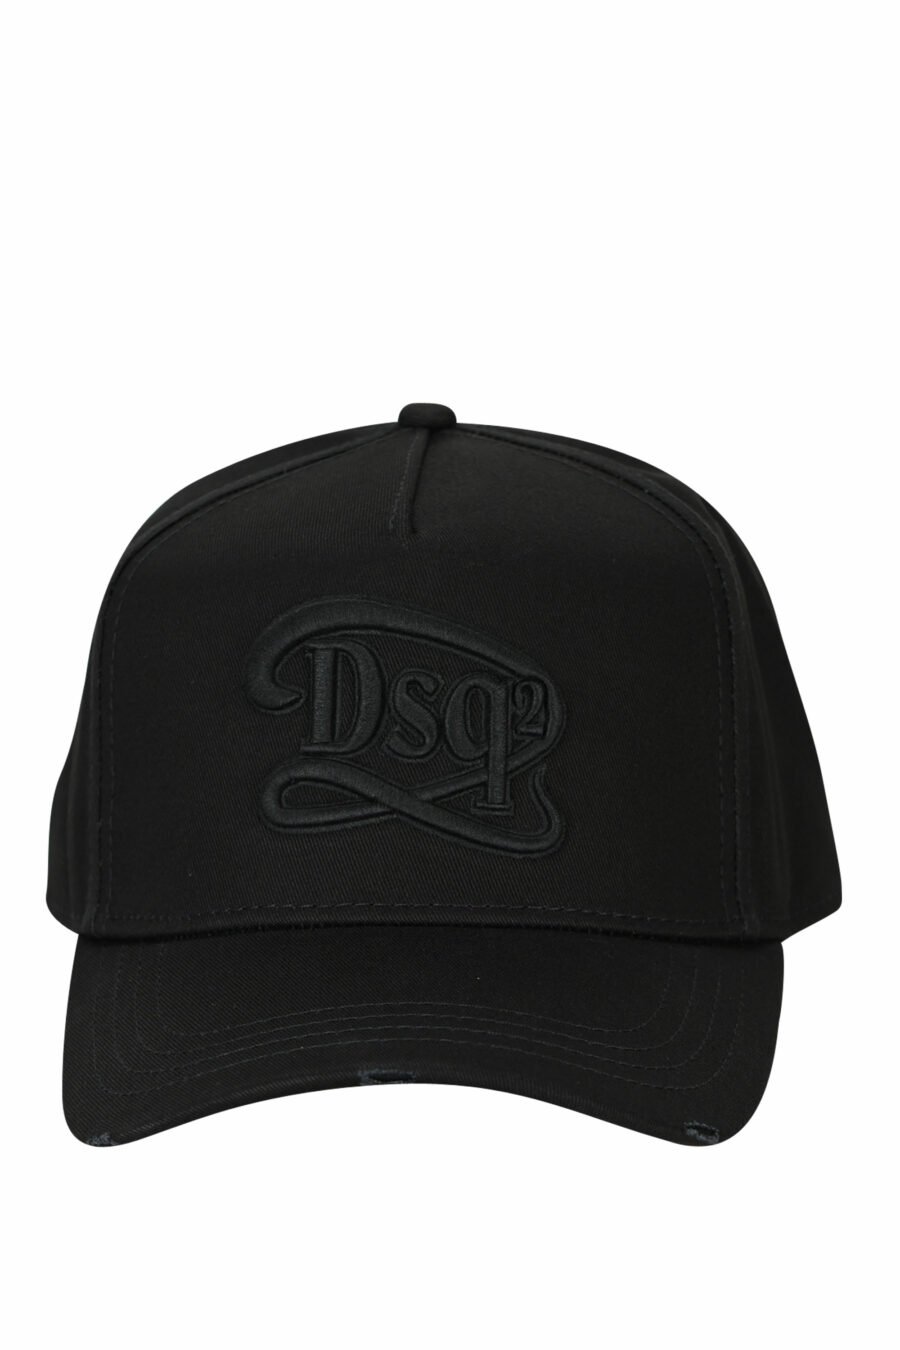 Schwarze Kappe mit einfarbigem "dsq2"-Logo - 8055777286609